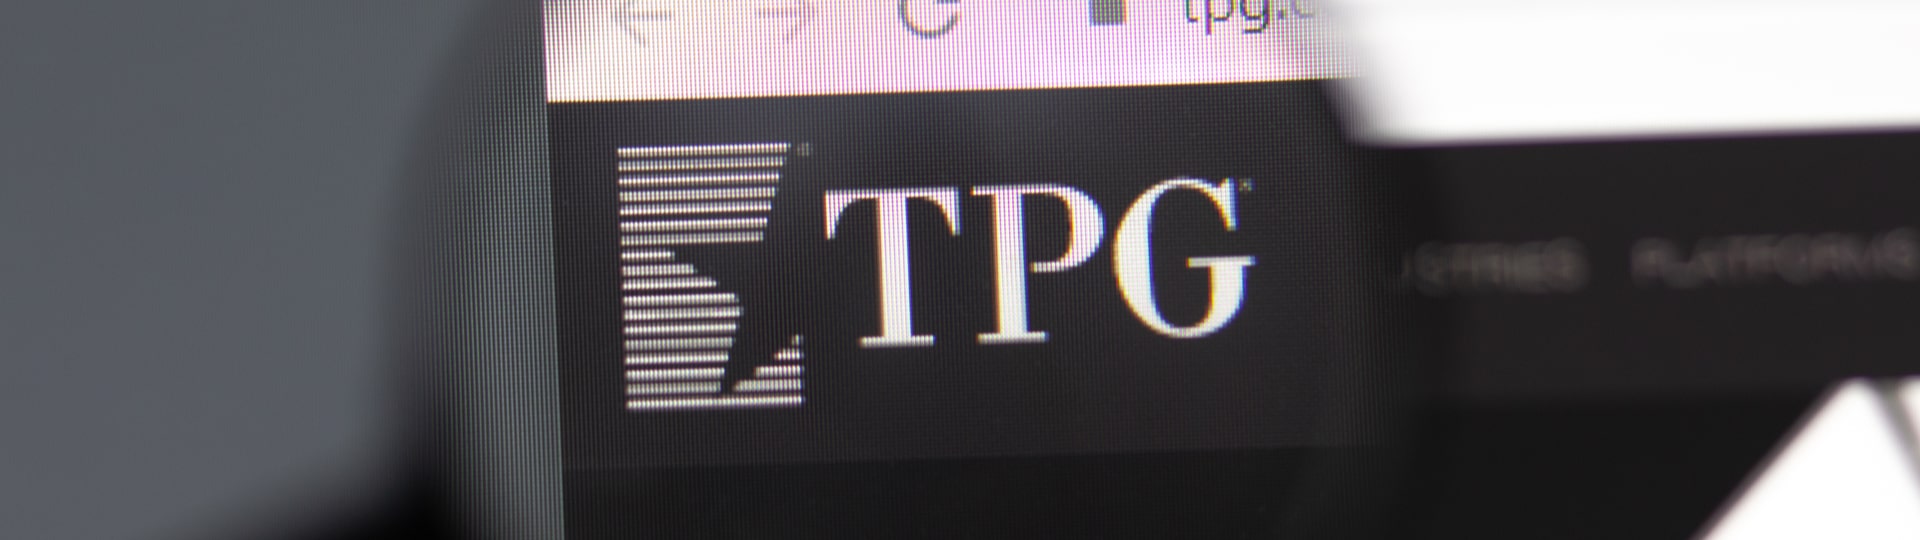 Primární nabídka akcií může investiční firmu TPG ocenit až na 9,3 miliardy dolarů